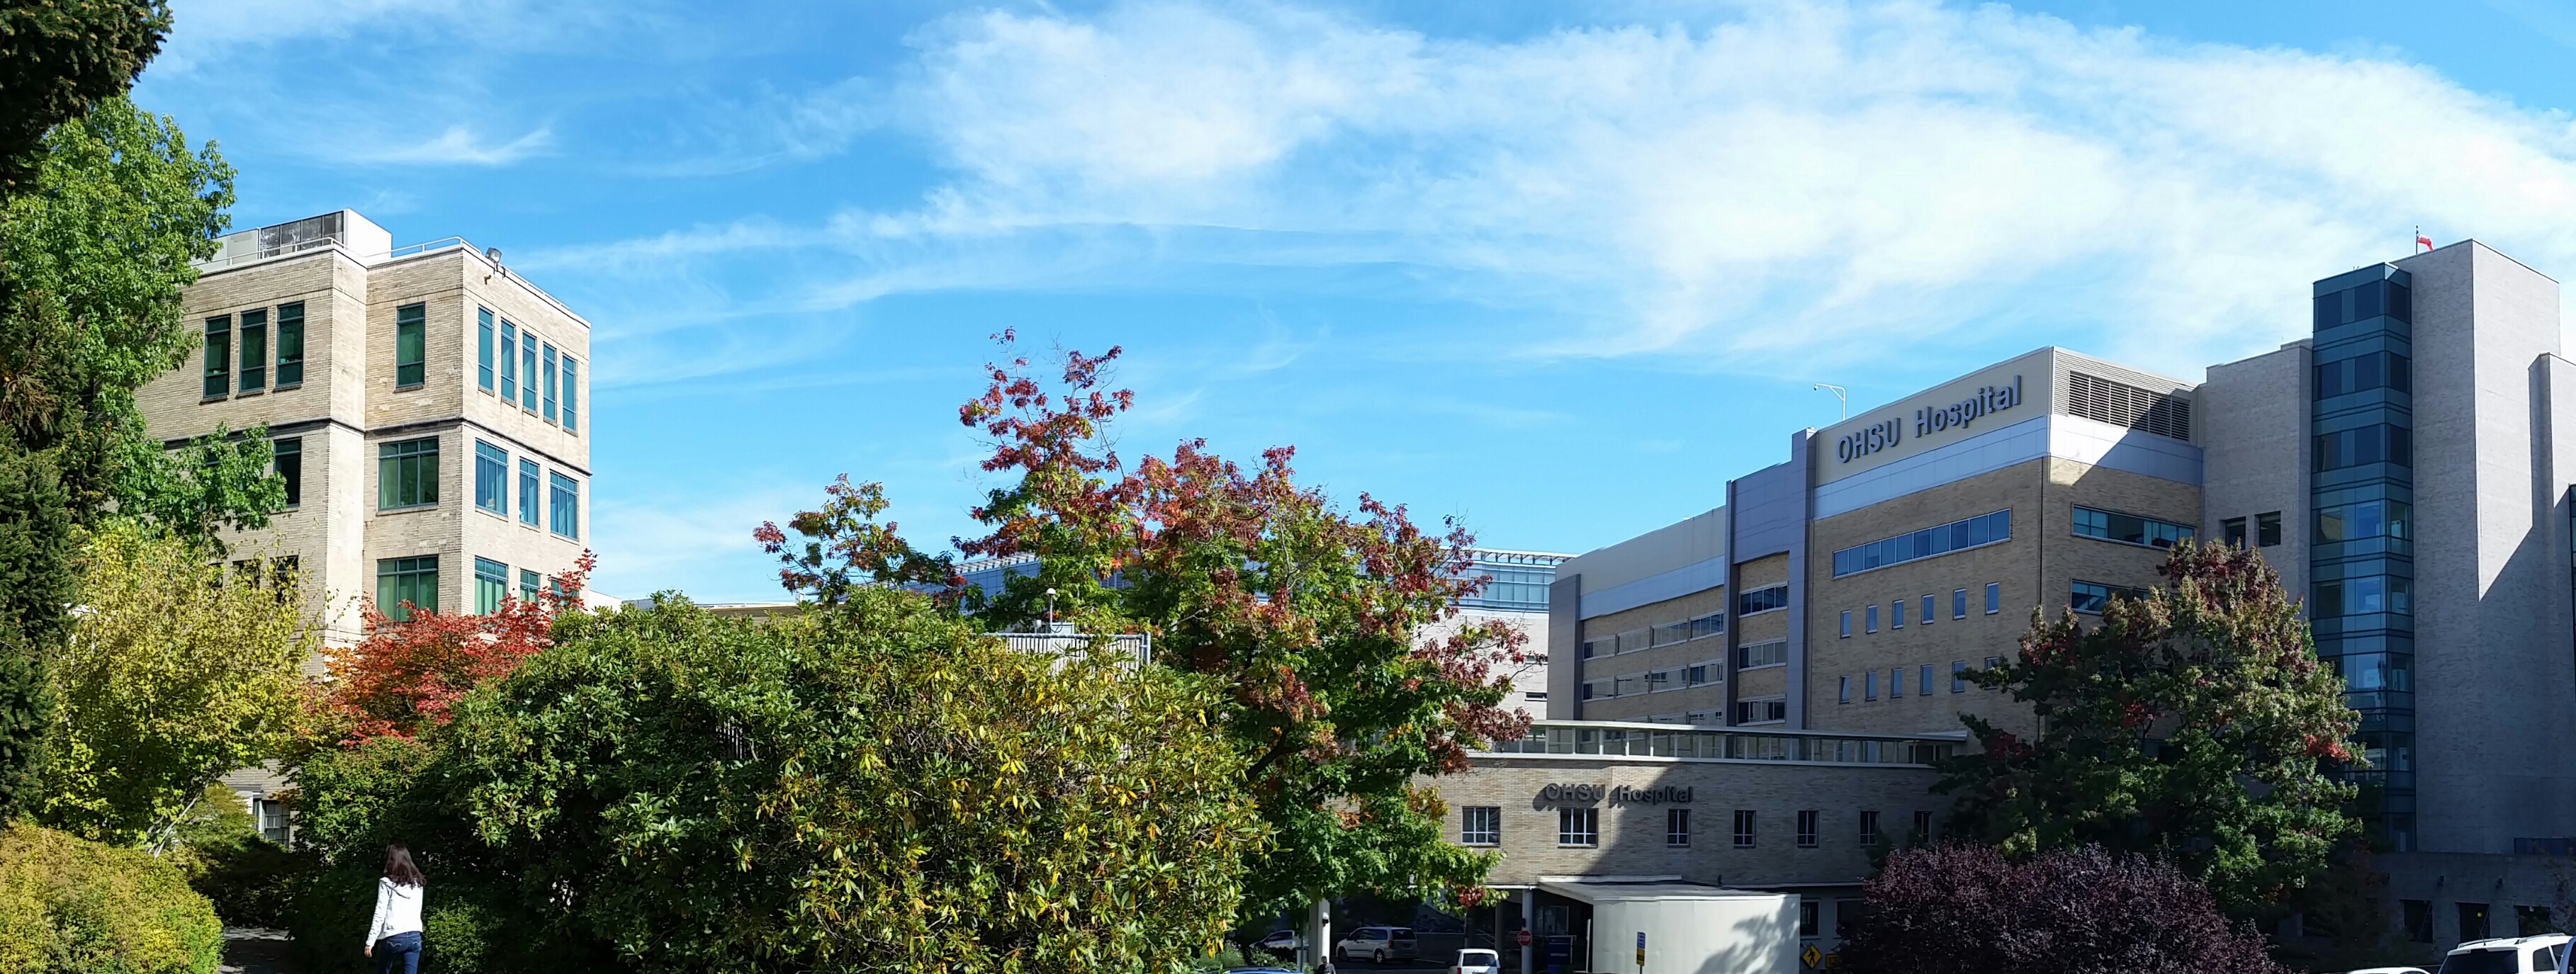 OHSU Campus